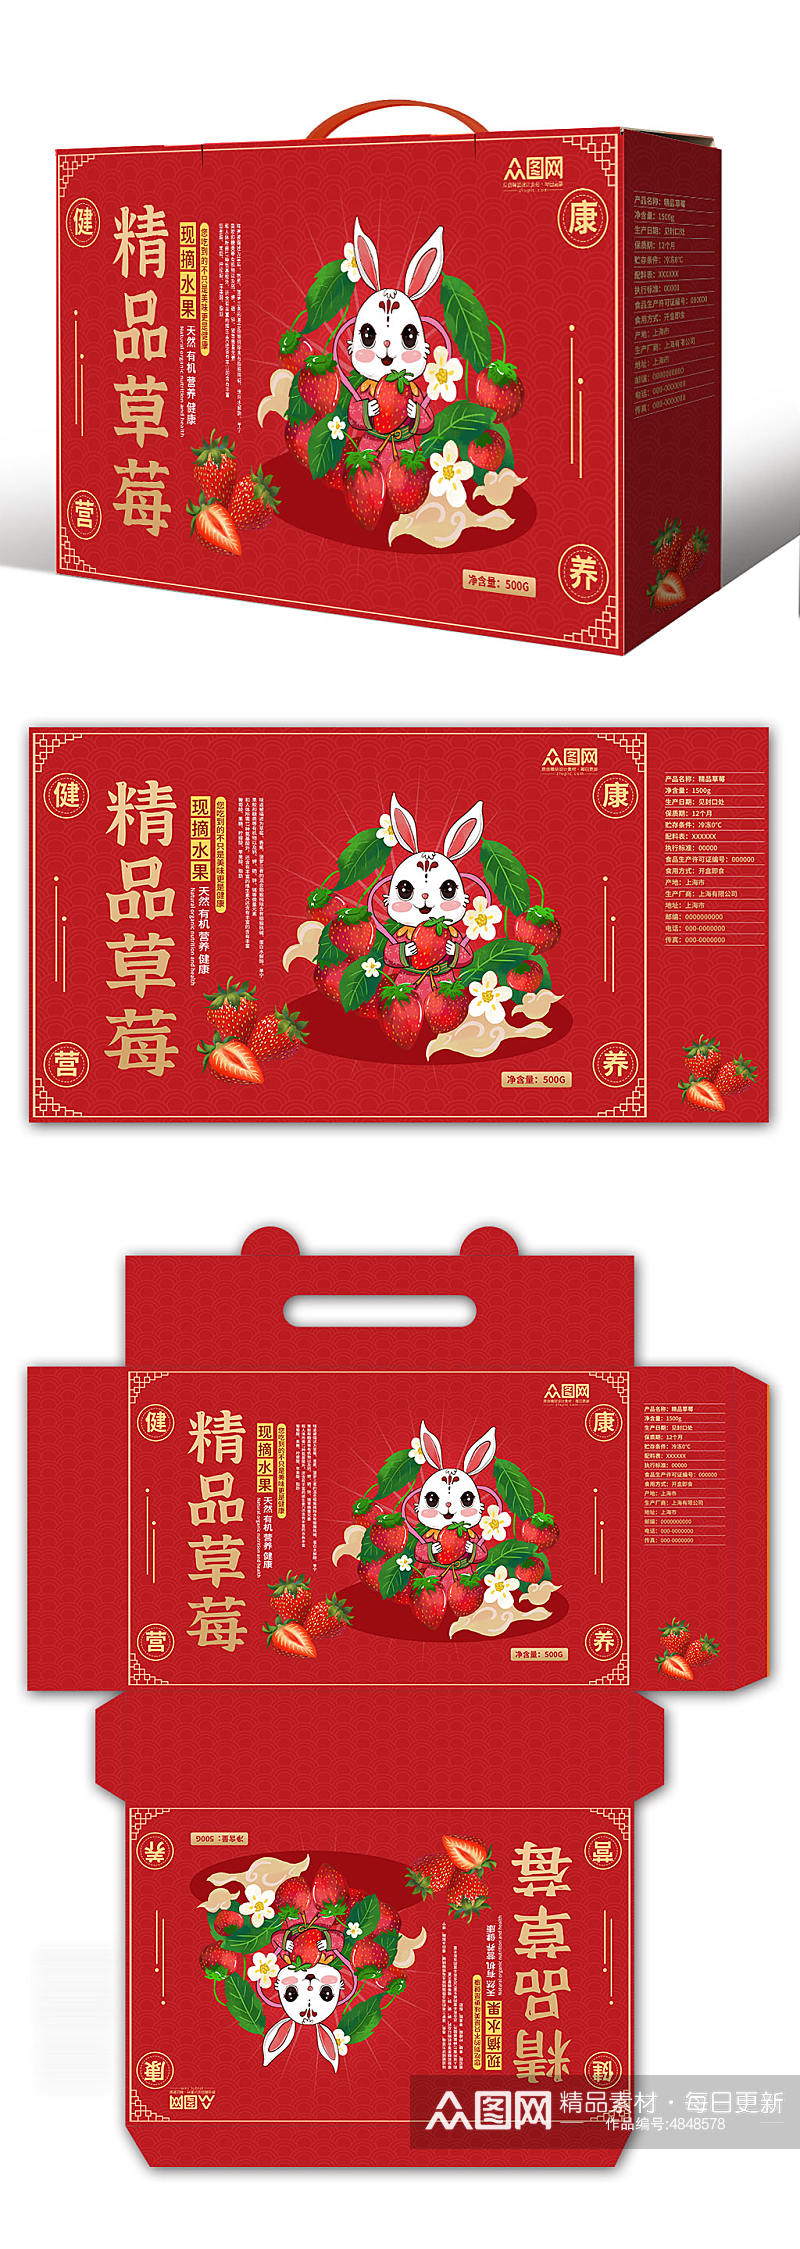 红色草莓水果鲜果包装礼盒设计素材